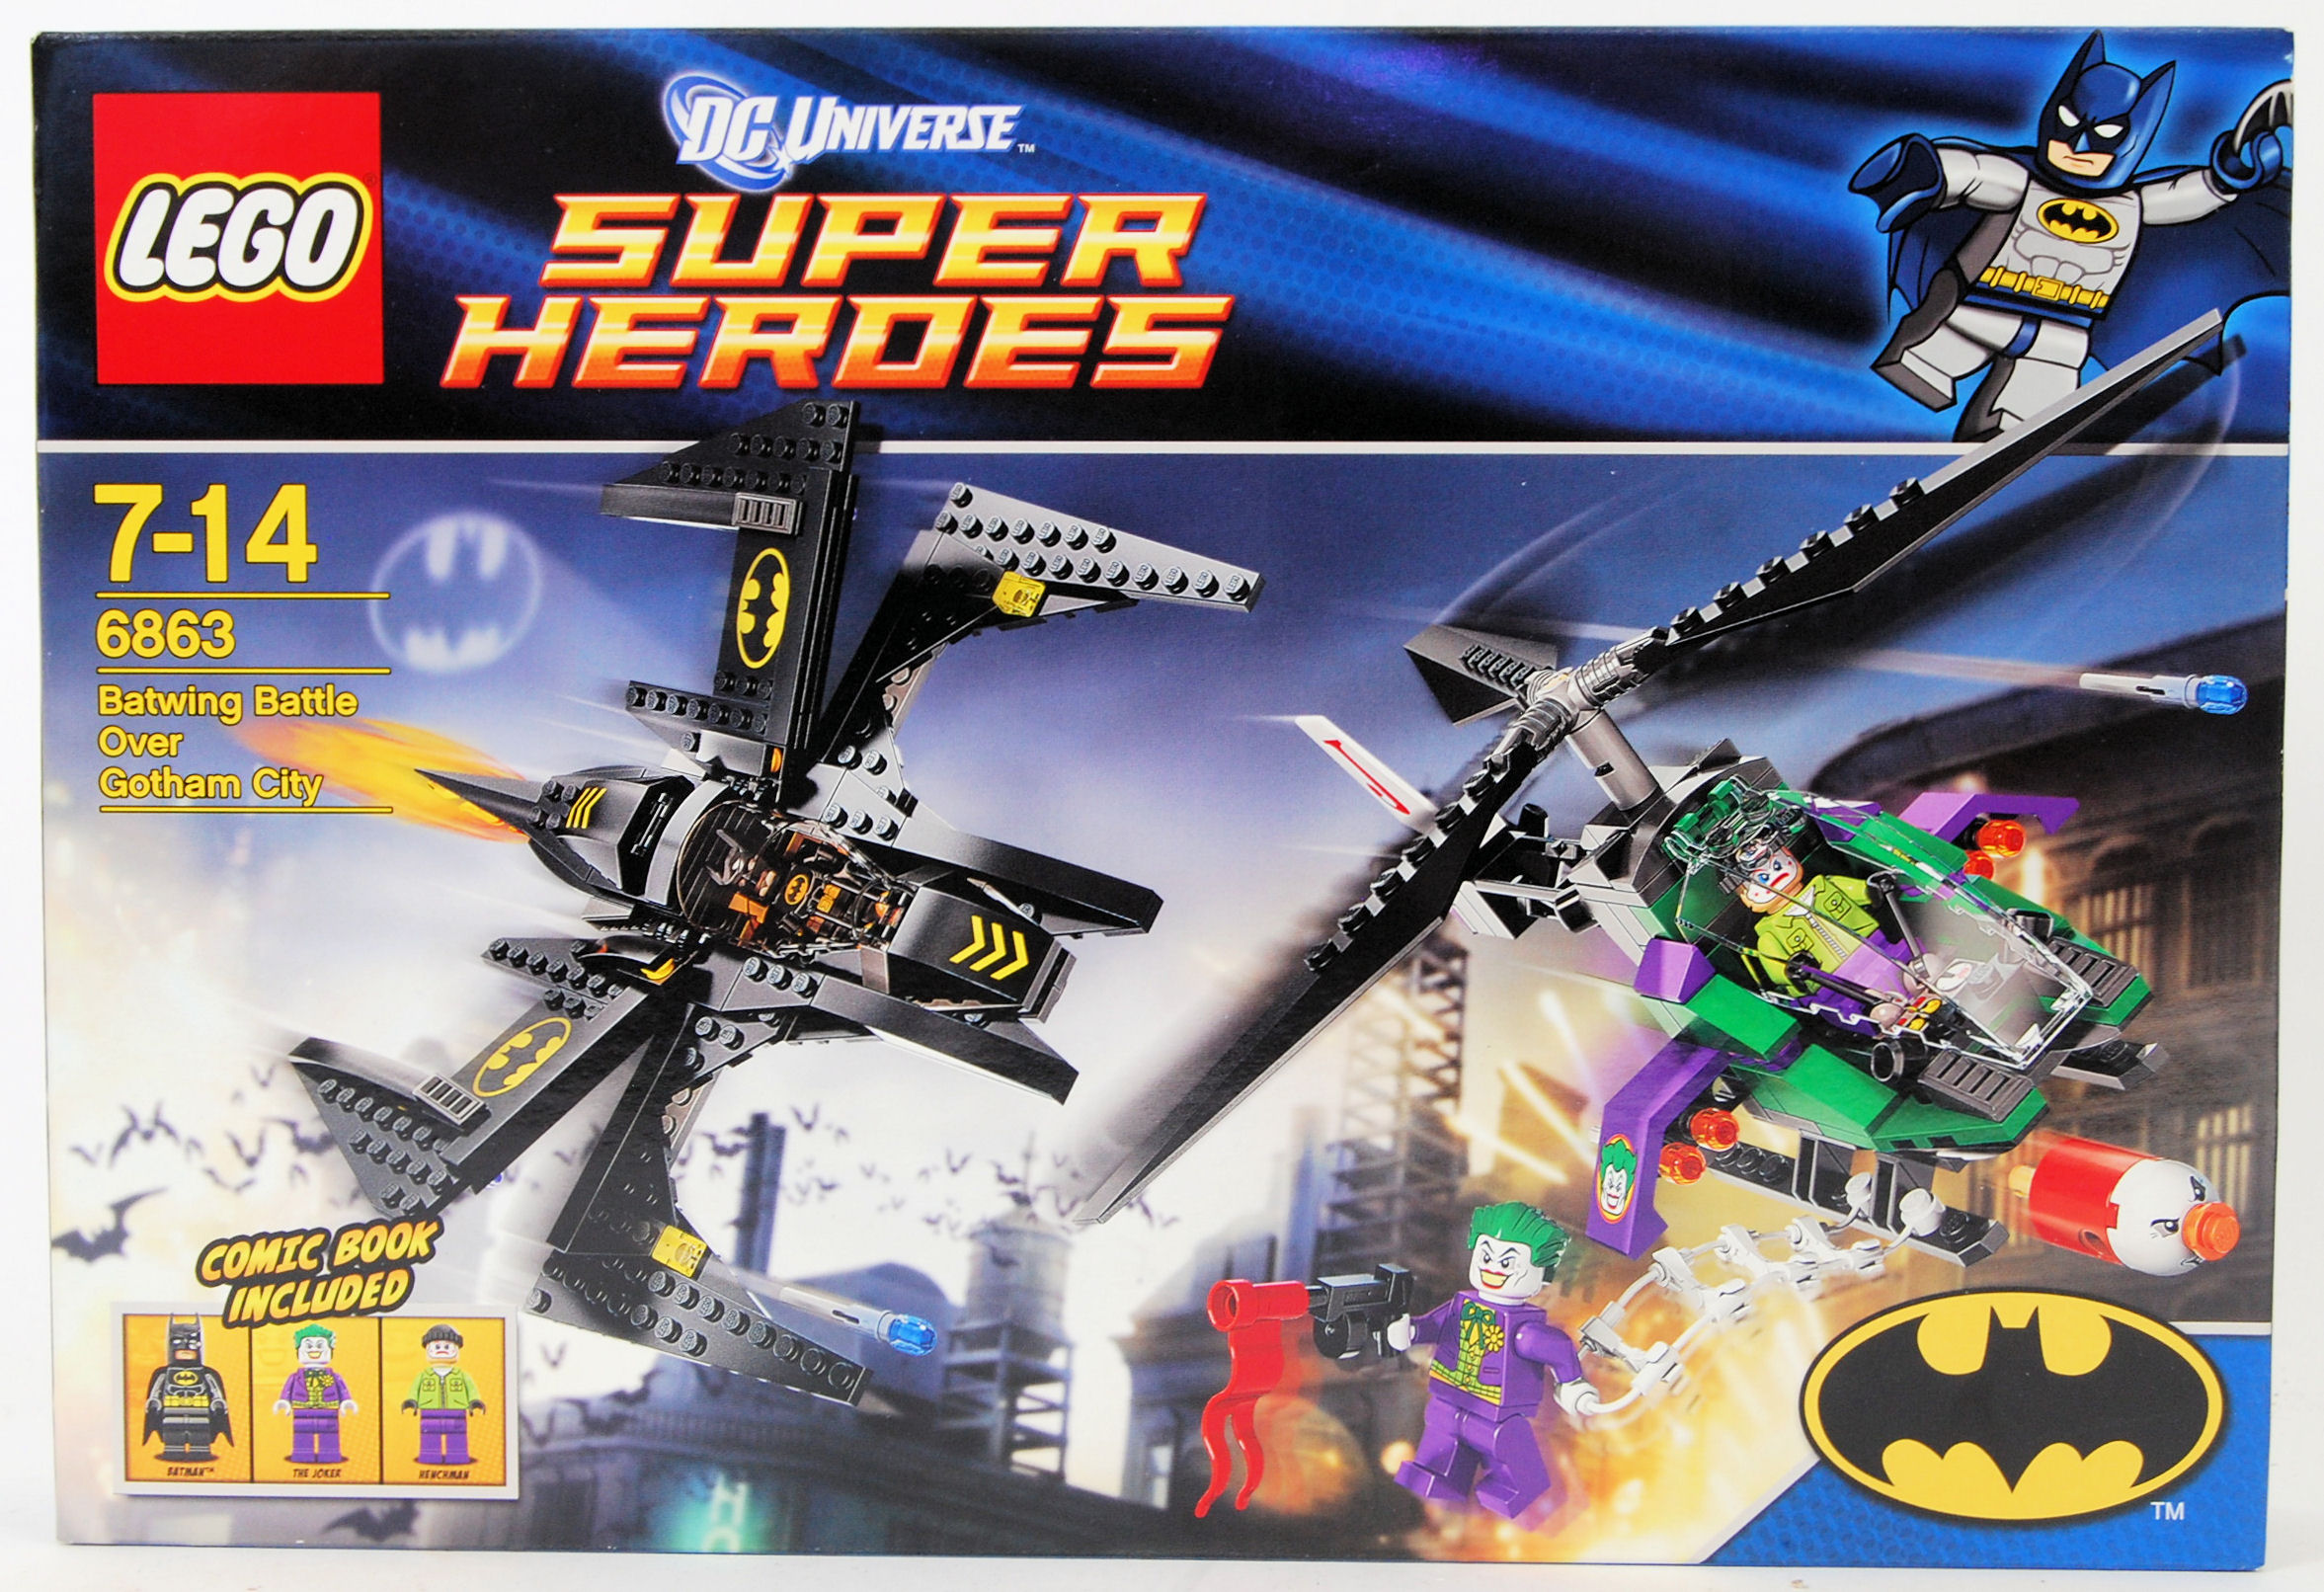 LEGO SUPER HEROES: A Lego DC Comics Super Heroes 6863 set 'Batwing Battle Over Gotham City'.